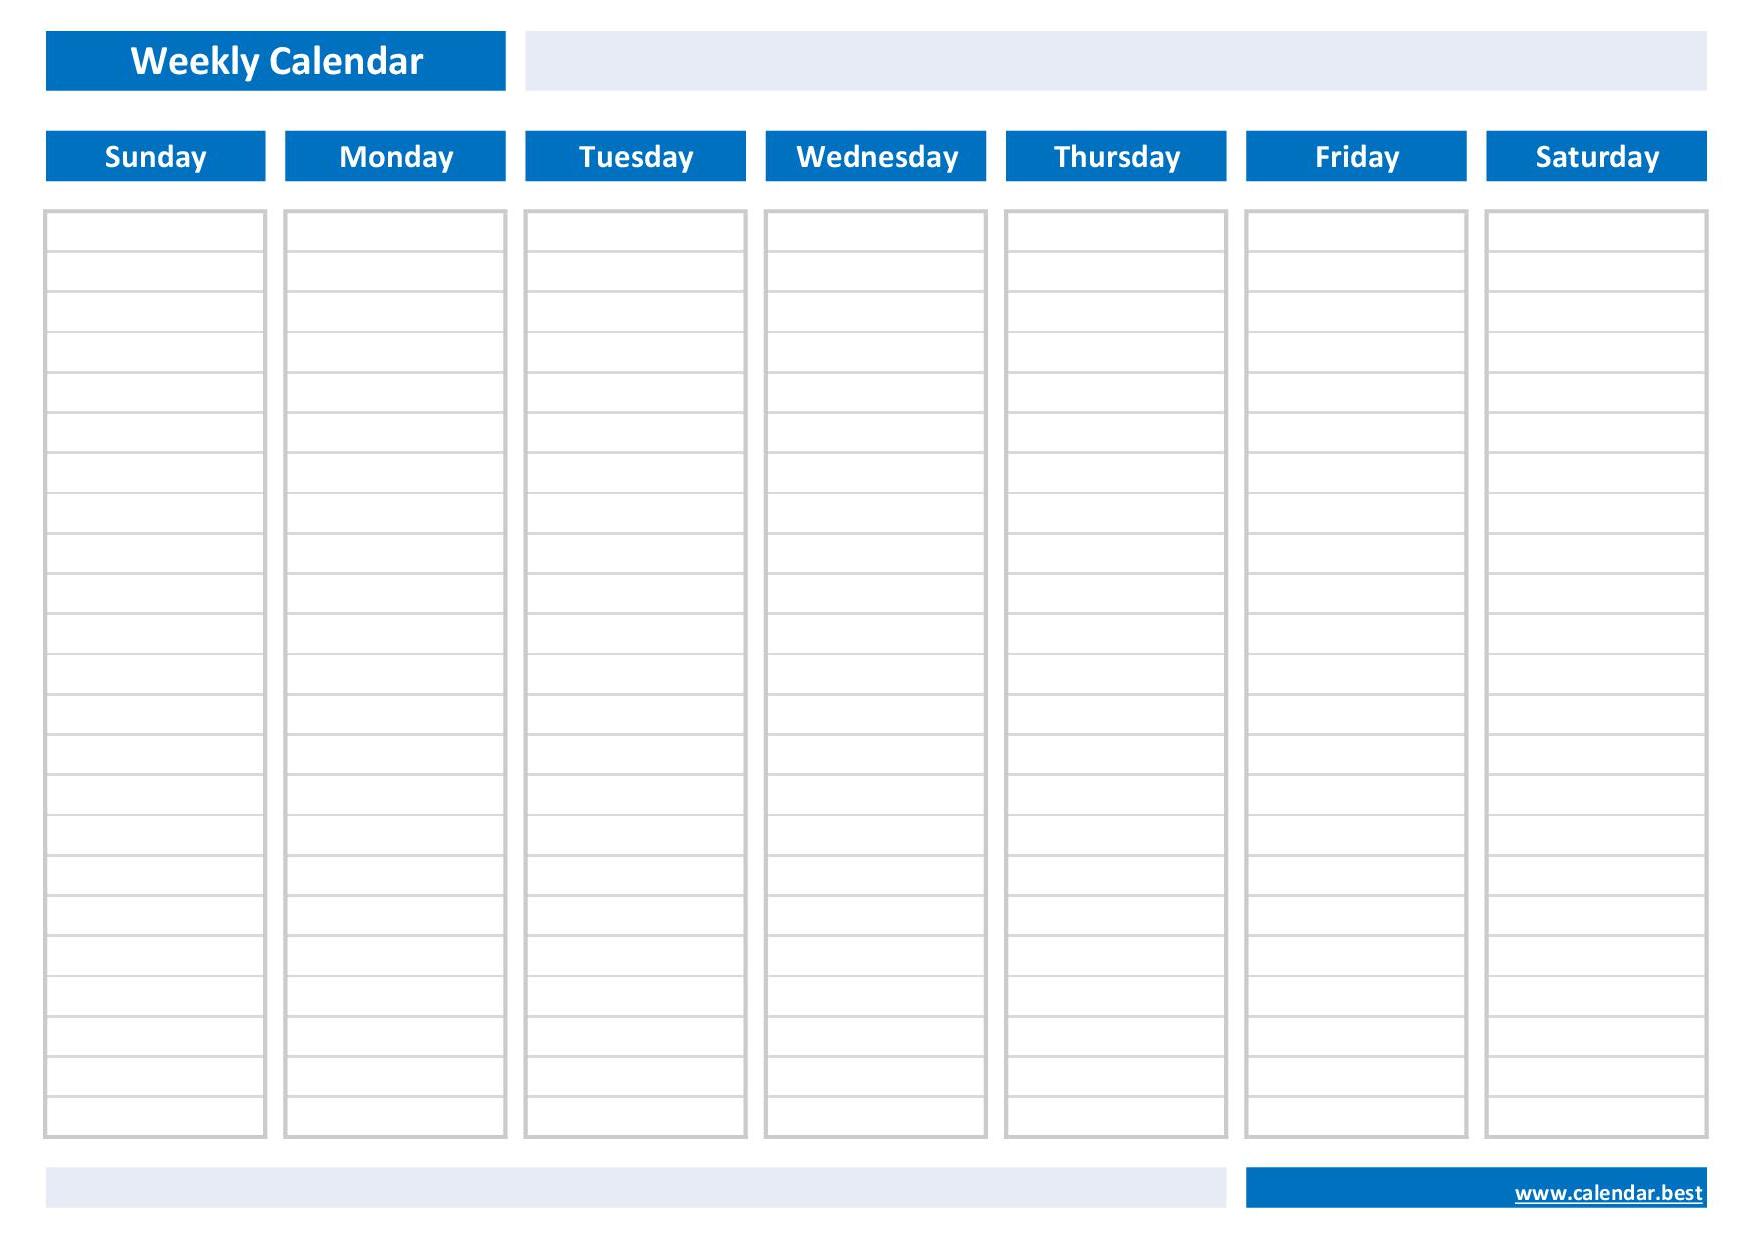 weekly calendar weekly schedule calendar best